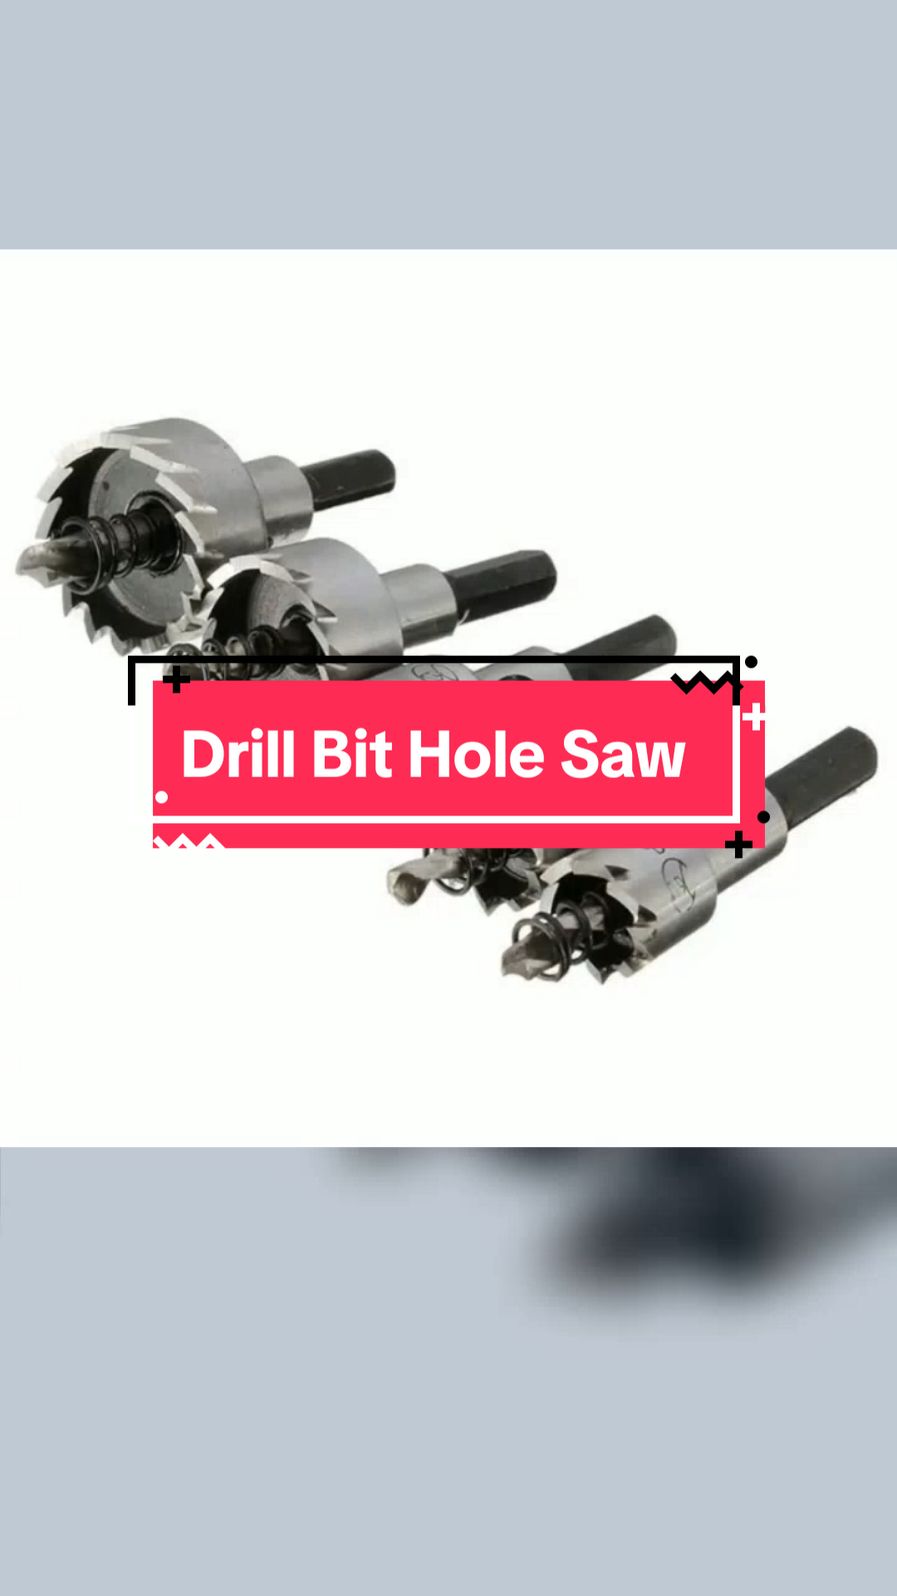 #drillbitsaw #drillbitholesaw #holesaw 